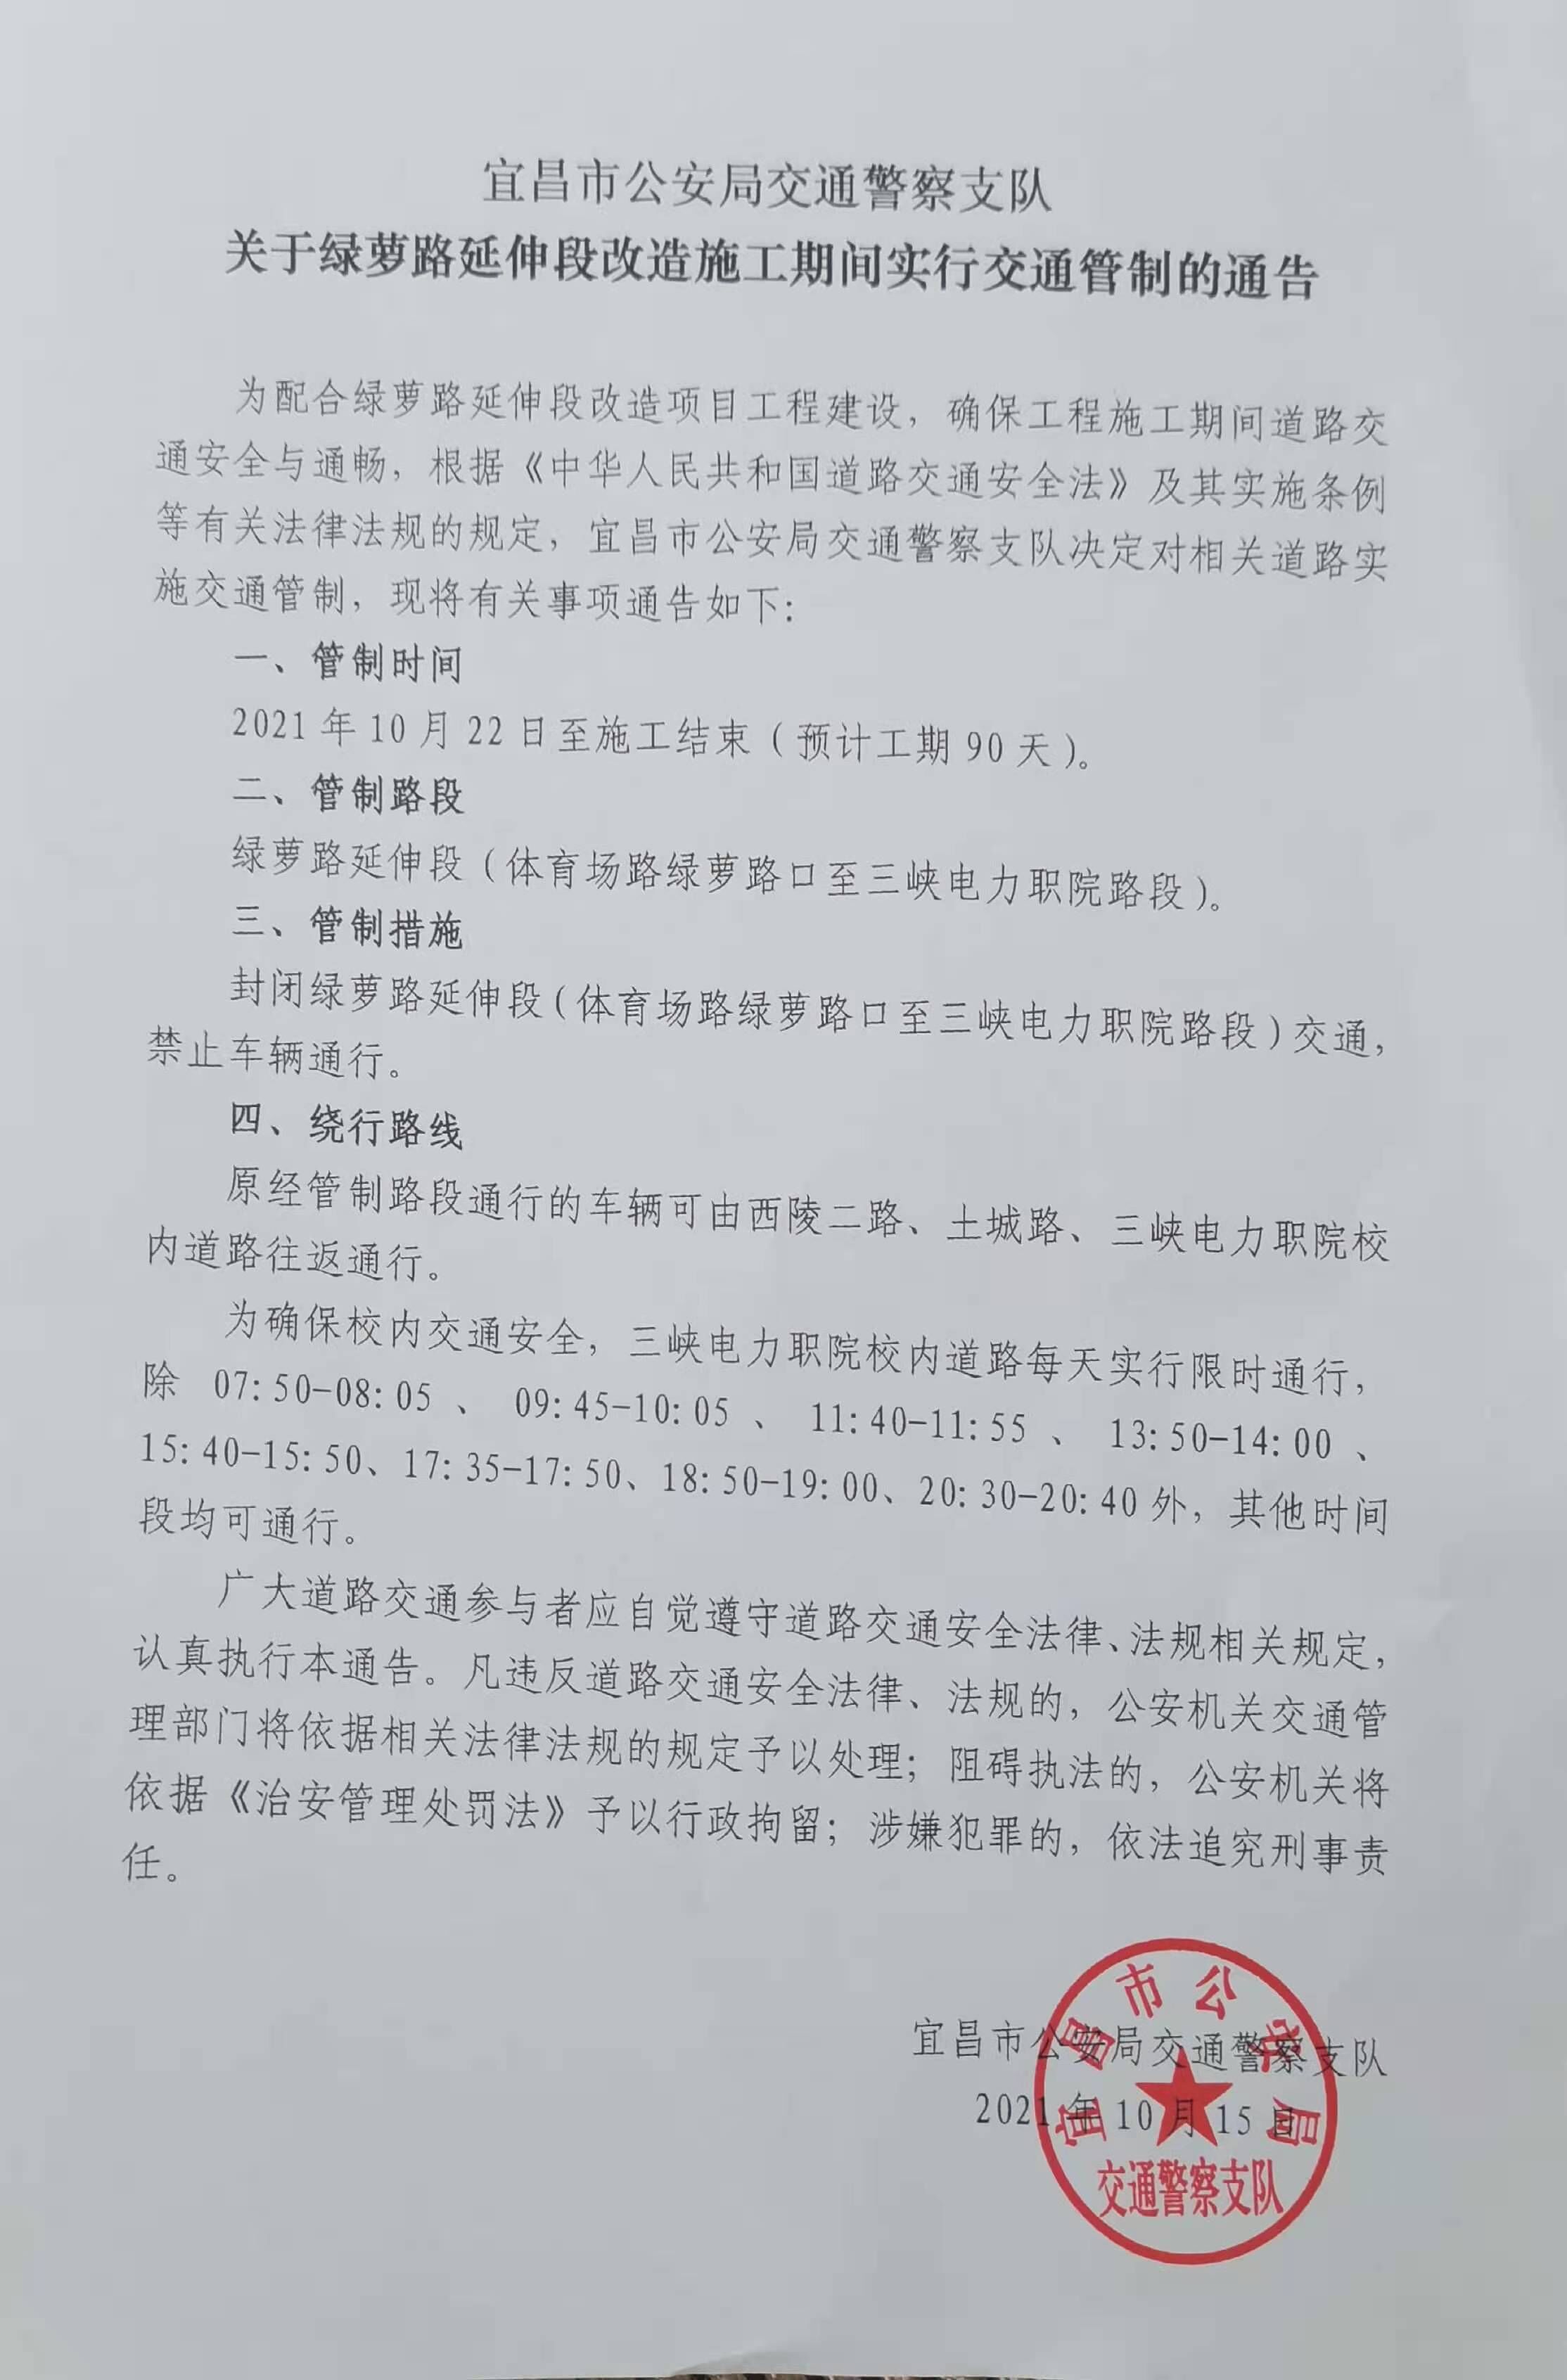 附件：宜昌市公安局交通警察支队关于绿萝路延伸段改造施工期间实行交通管制的通告